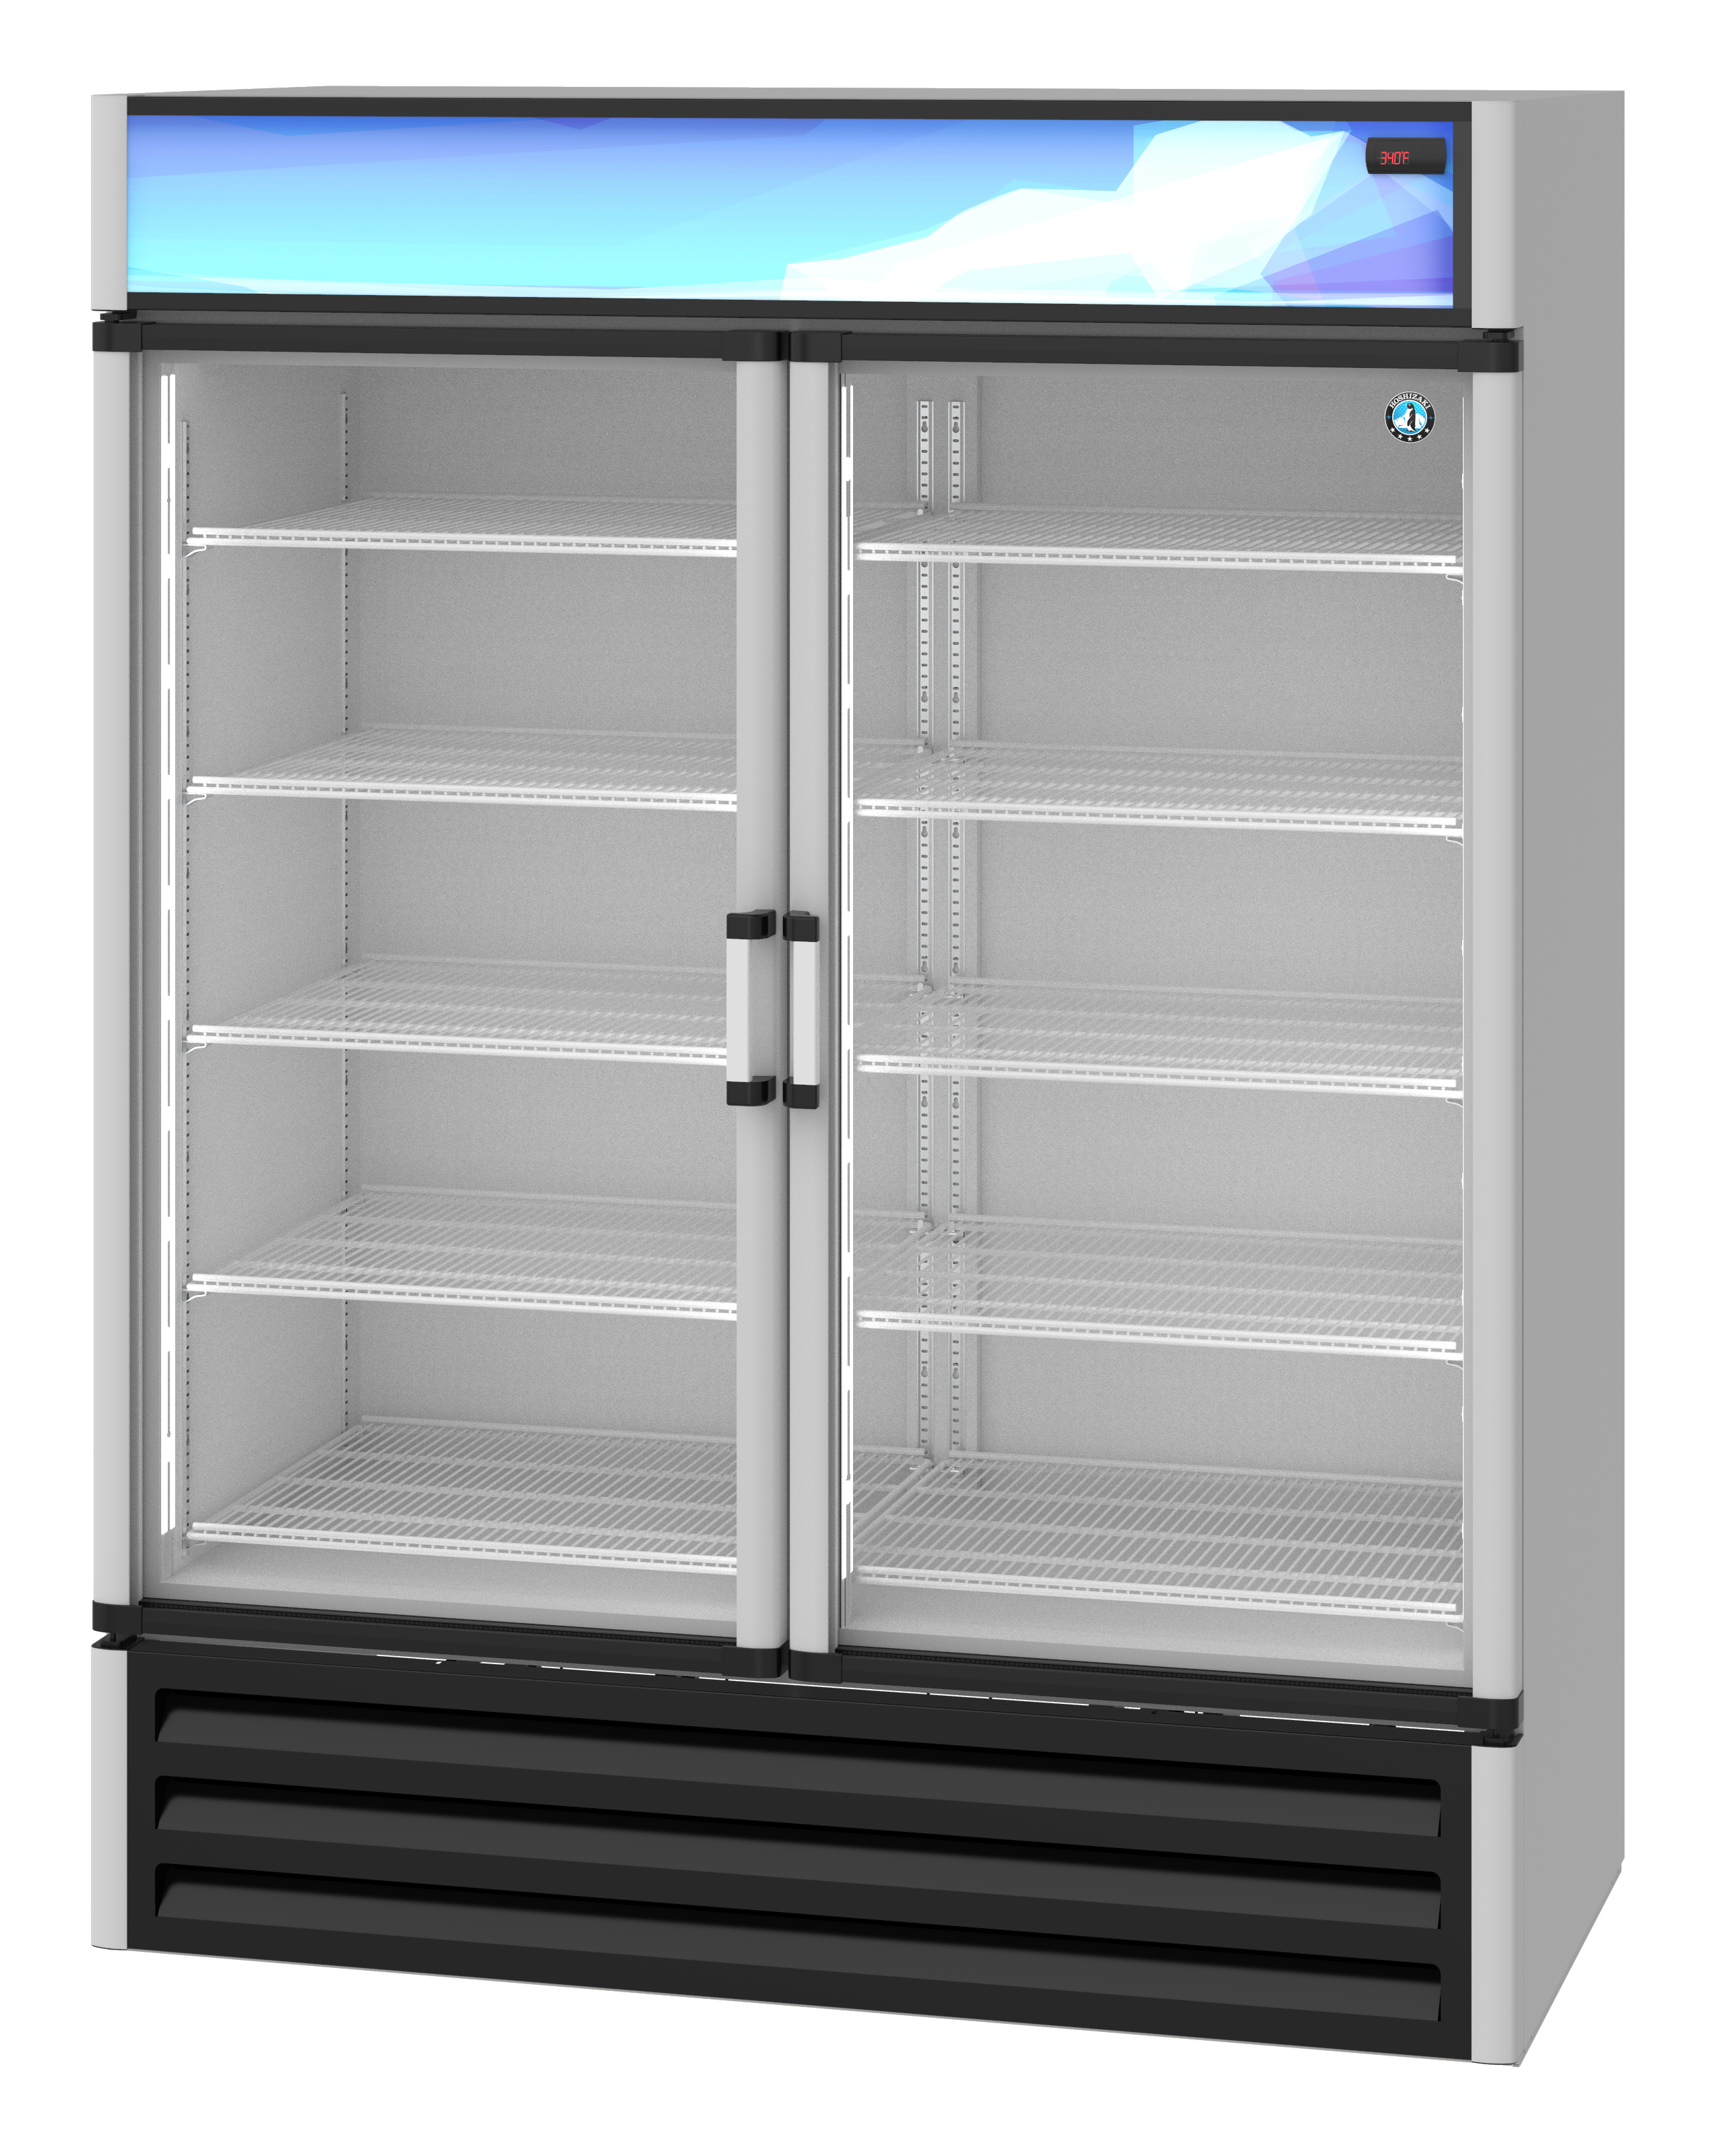 RM-49, Refrigerator, Two Section Glass Door Merchandiser